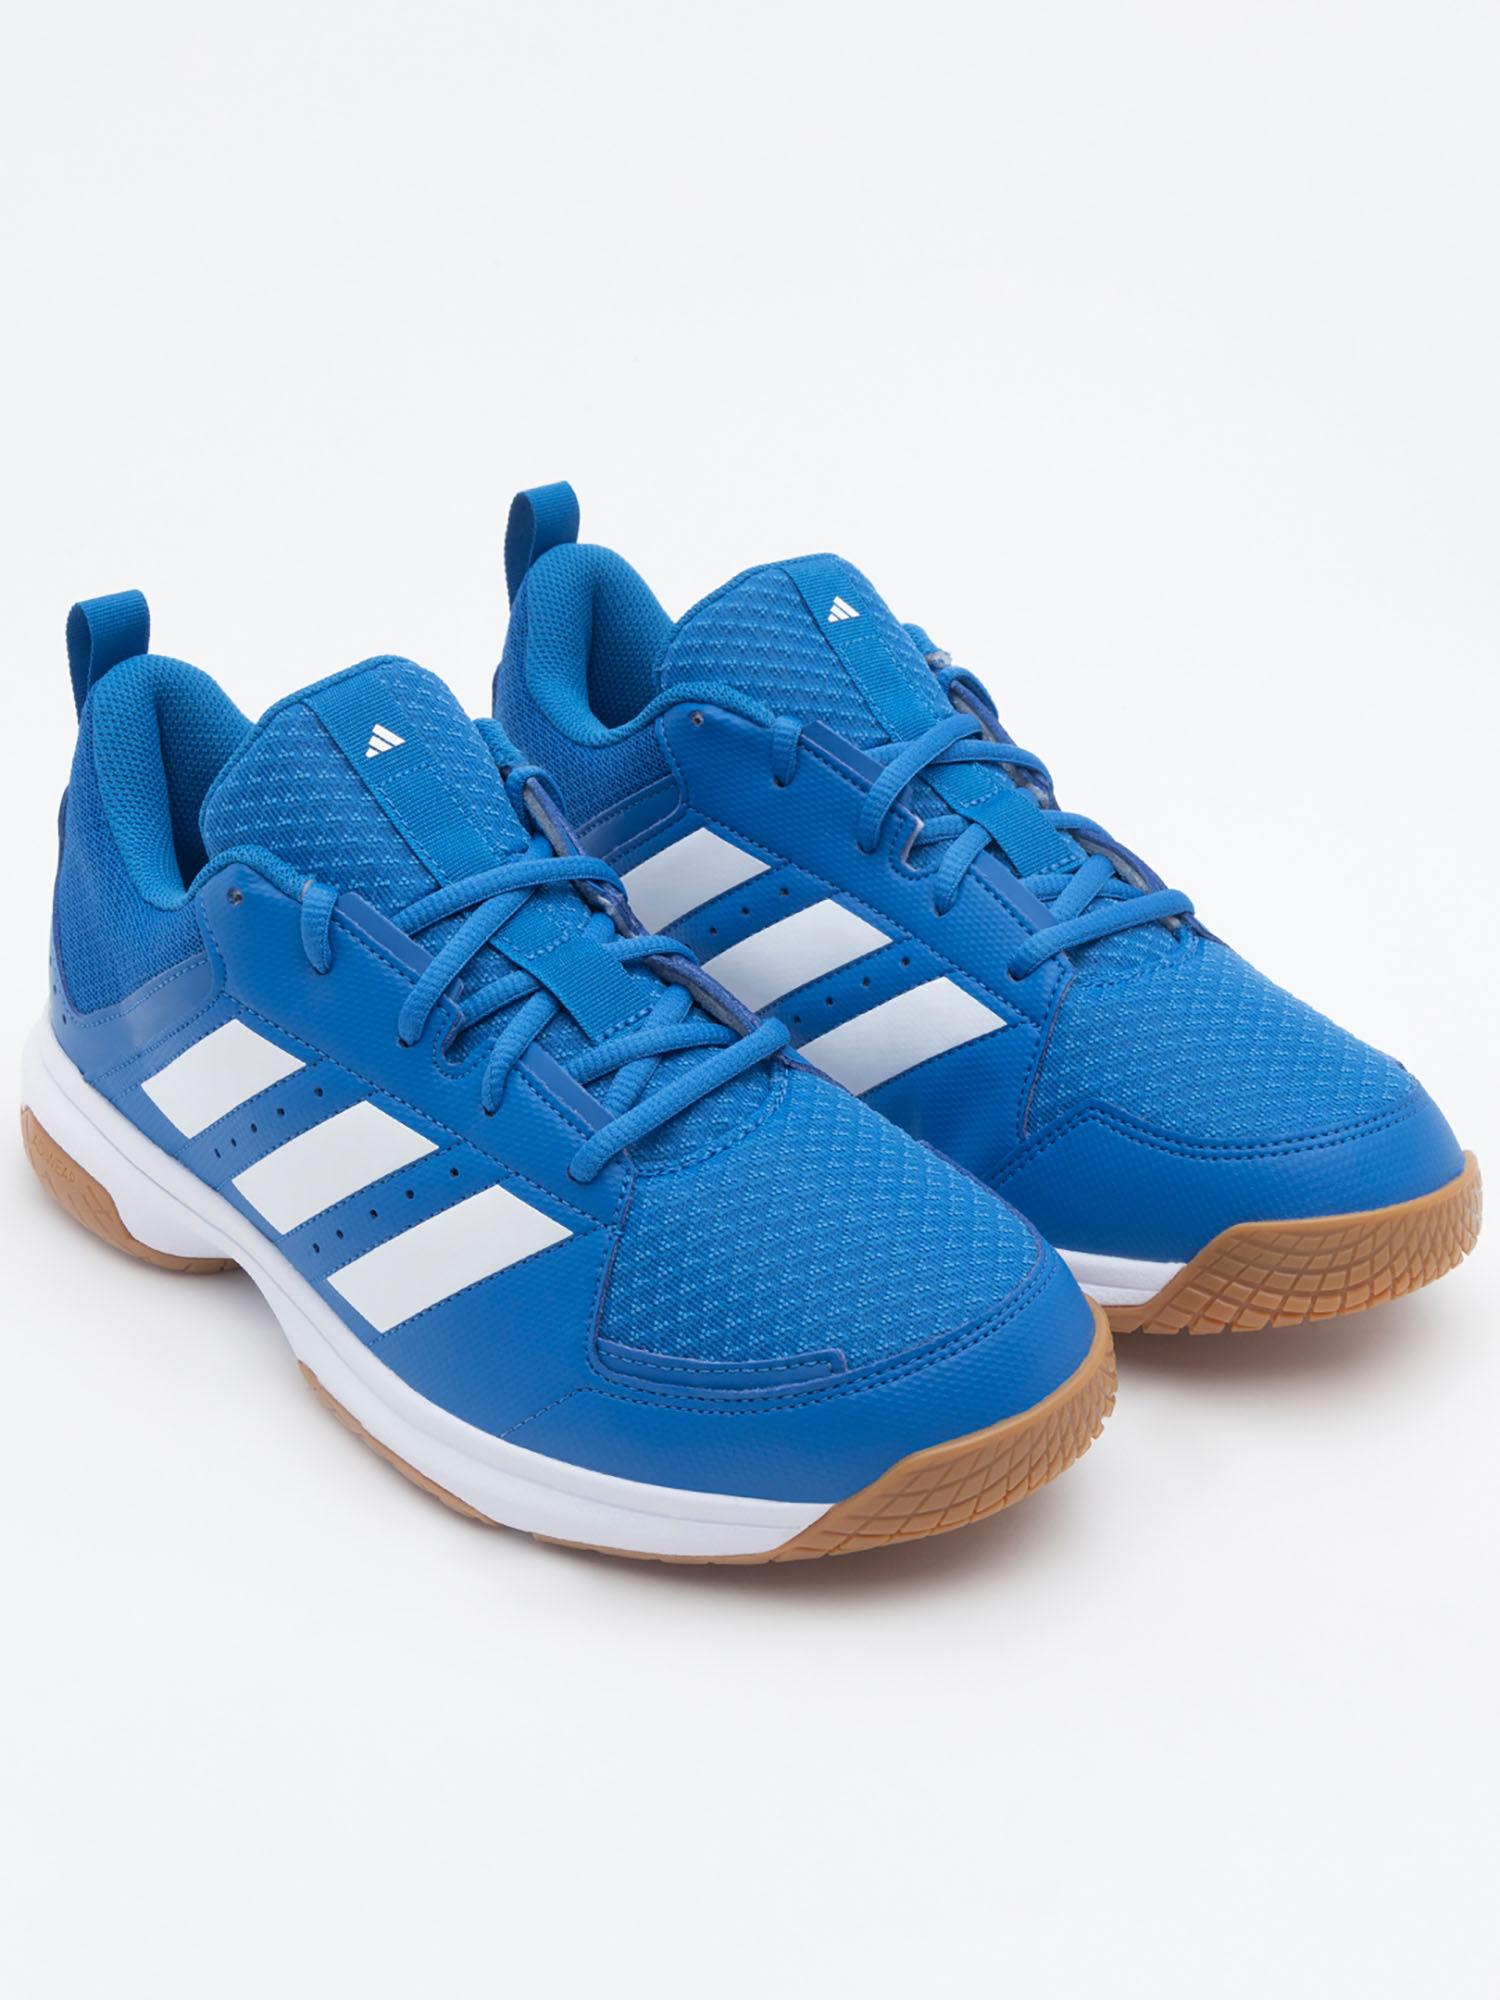 ligra-7-m-running-shoes-blue